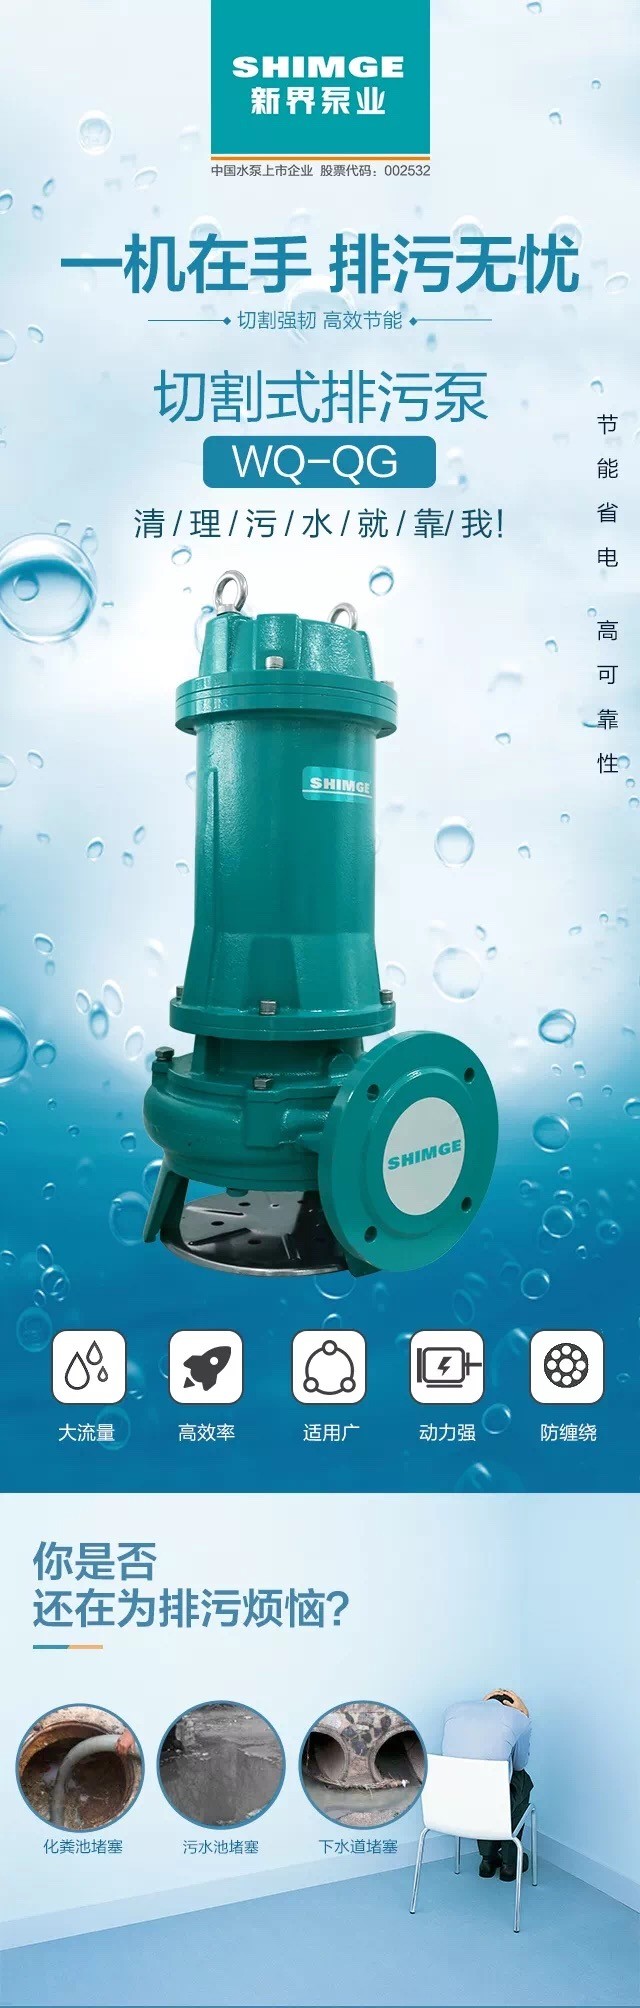 新界切割式污水泵220v/380V工业污水潜水泵家用化粪池抽粪排污泵详情1